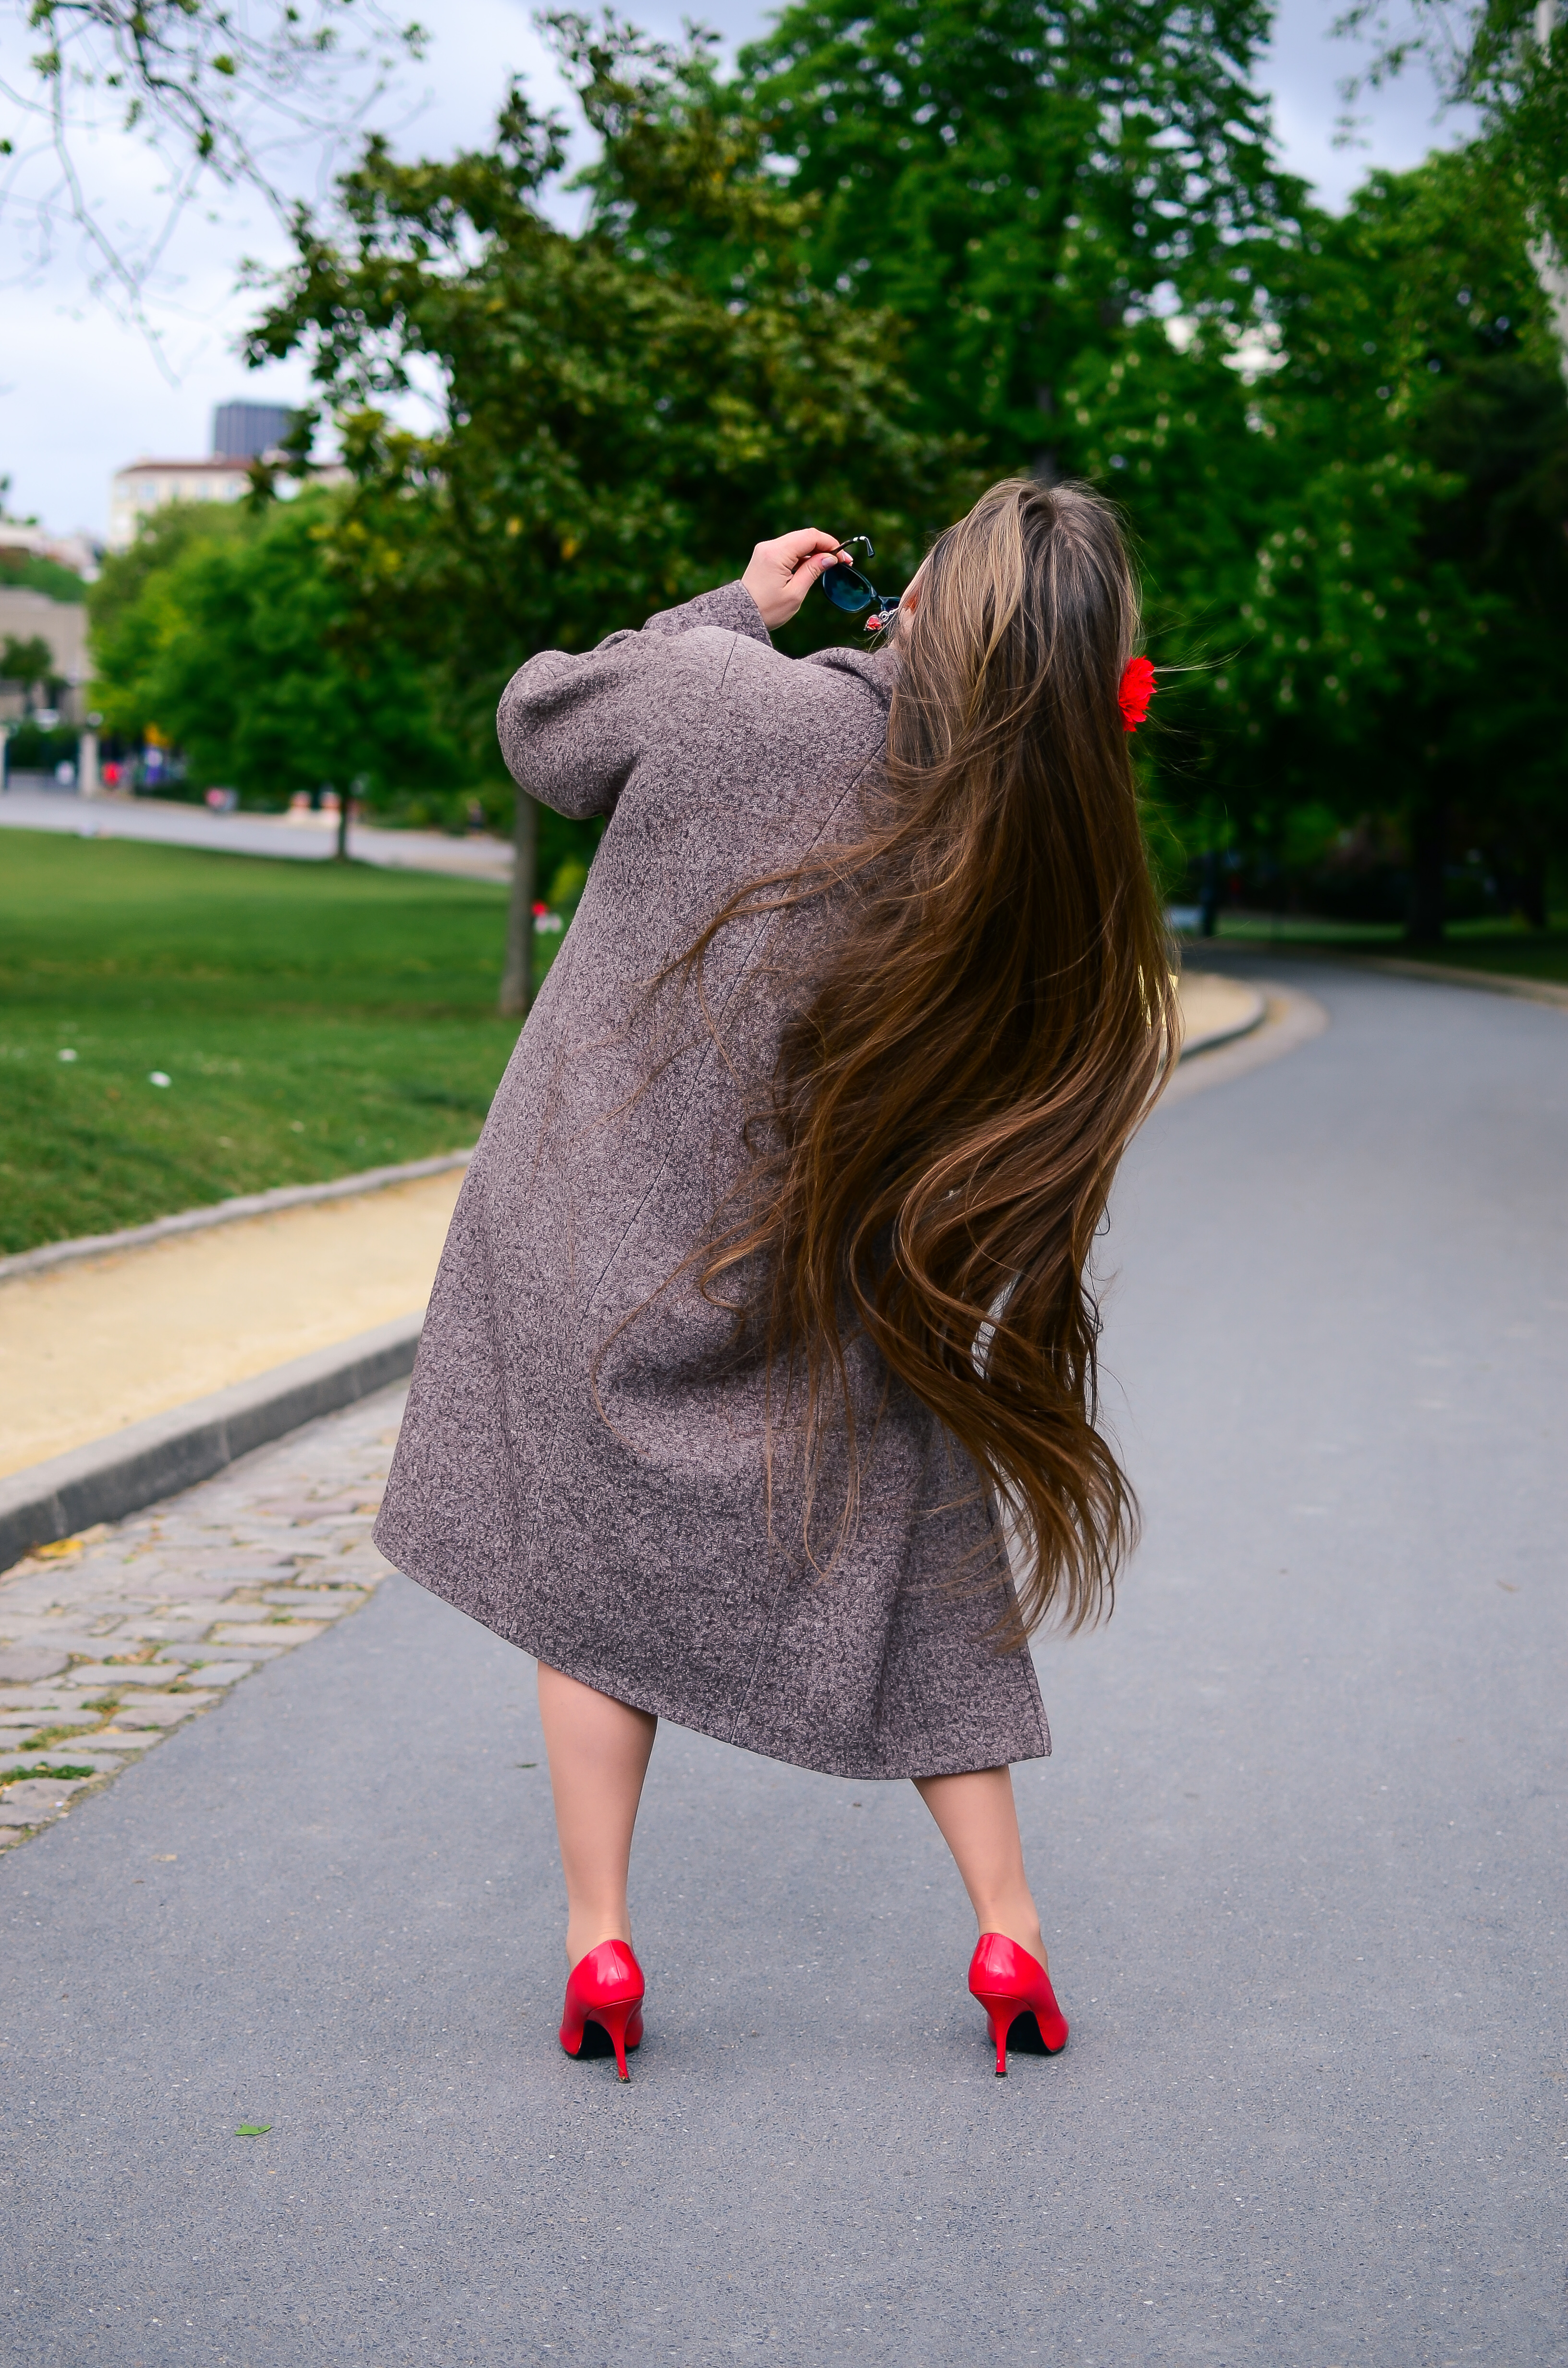 Vue arrière d'une femme aux cheveux bruns extrêmement longs | Source : Shutterstock